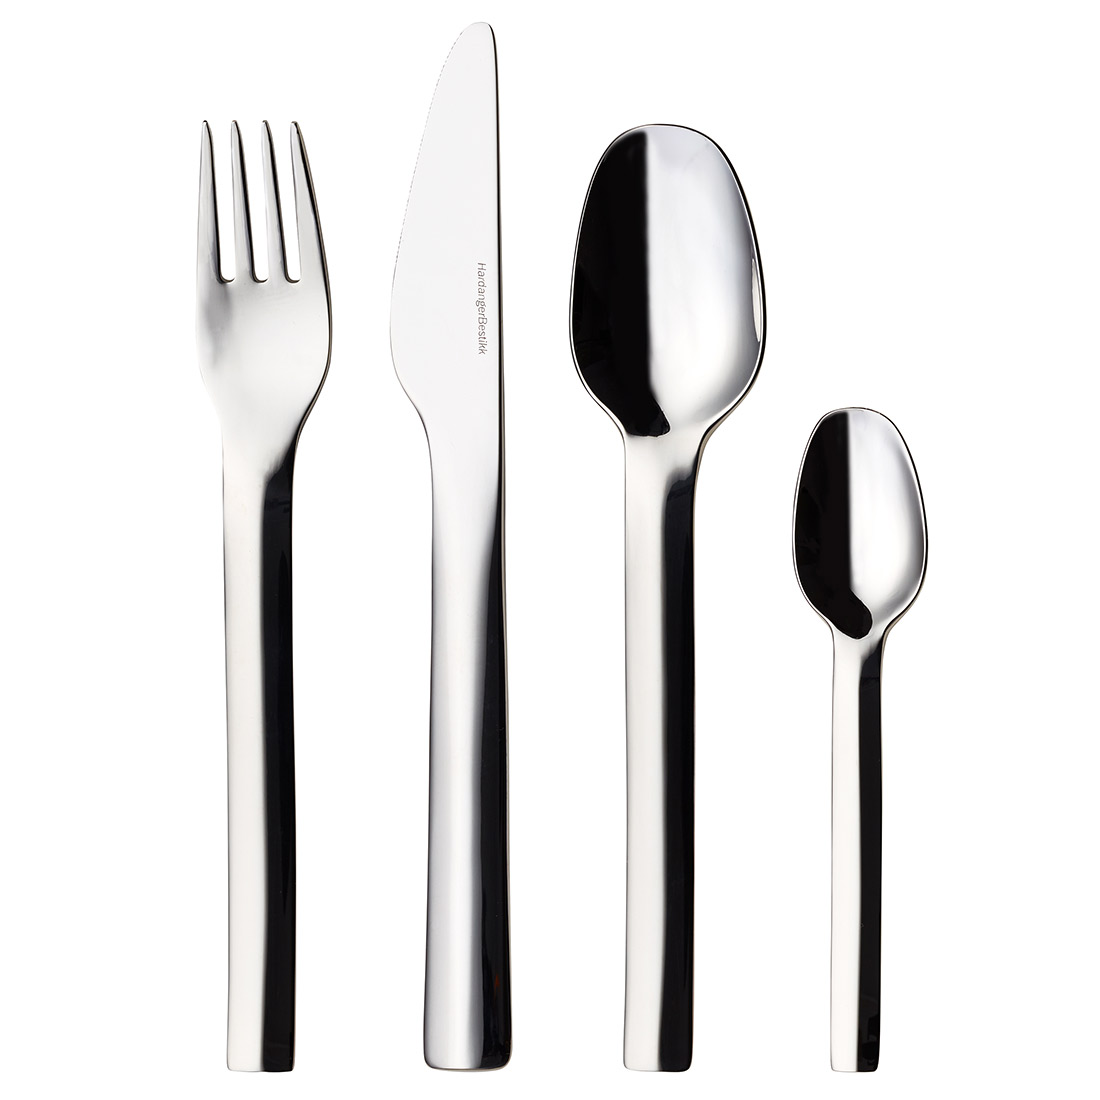 Linnea cutlery set product image